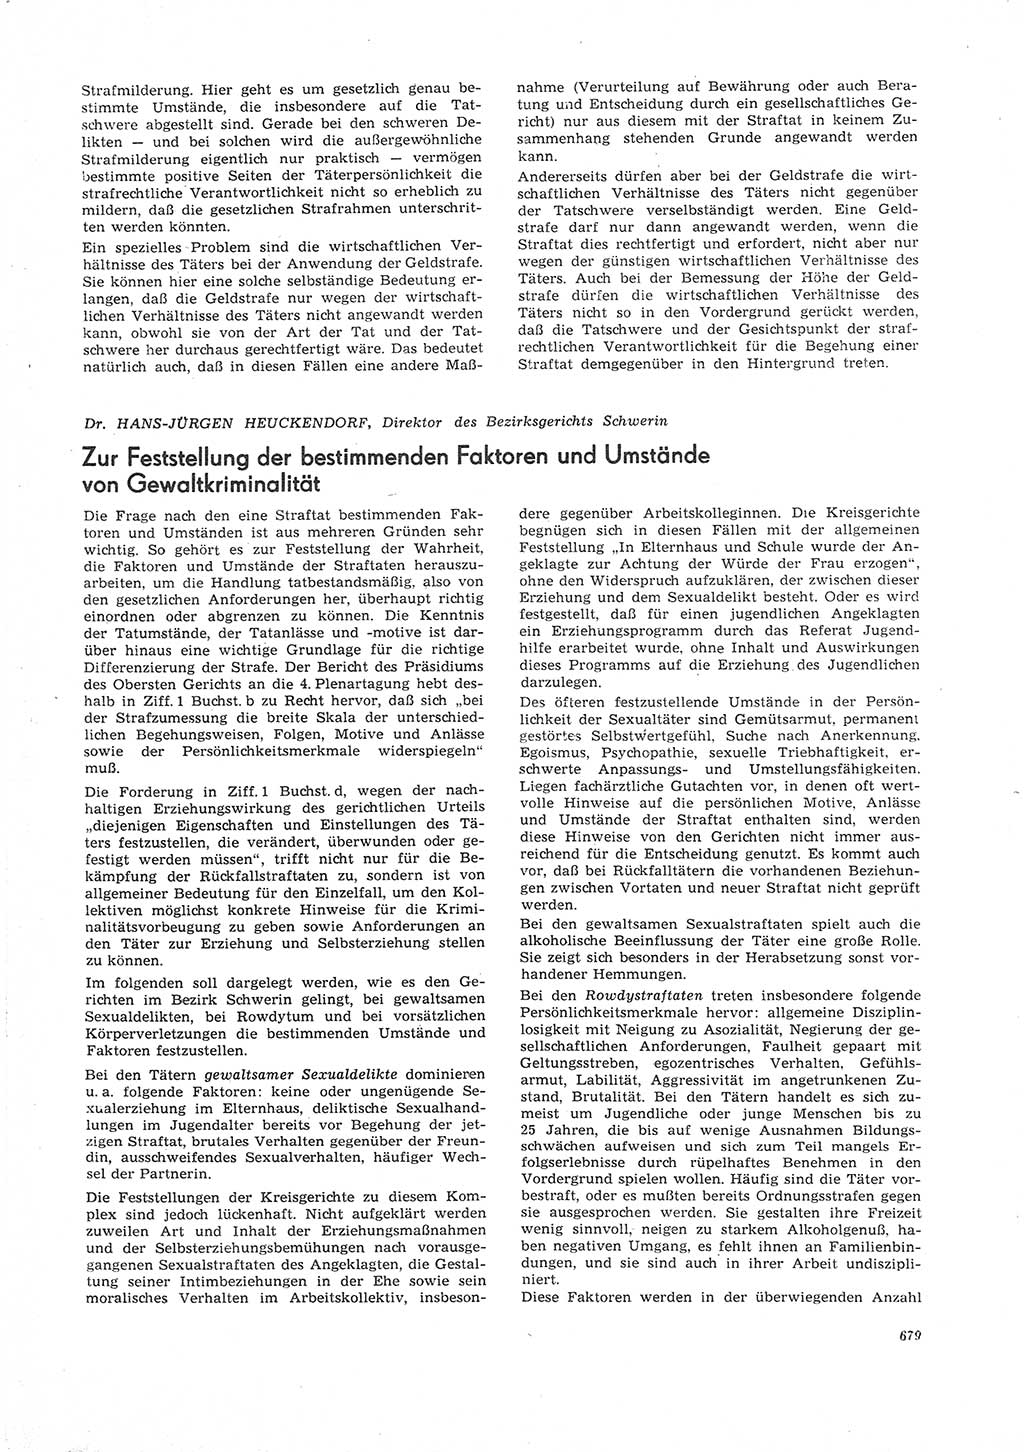 Neue Justiz (NJ), Zeitschrift für Recht und Rechtswissenschaft [Deutsche Demokratische Republik (DDR)], 26. Jahrgang 1972, Seite 679 (NJ DDR 1972, S. 679)